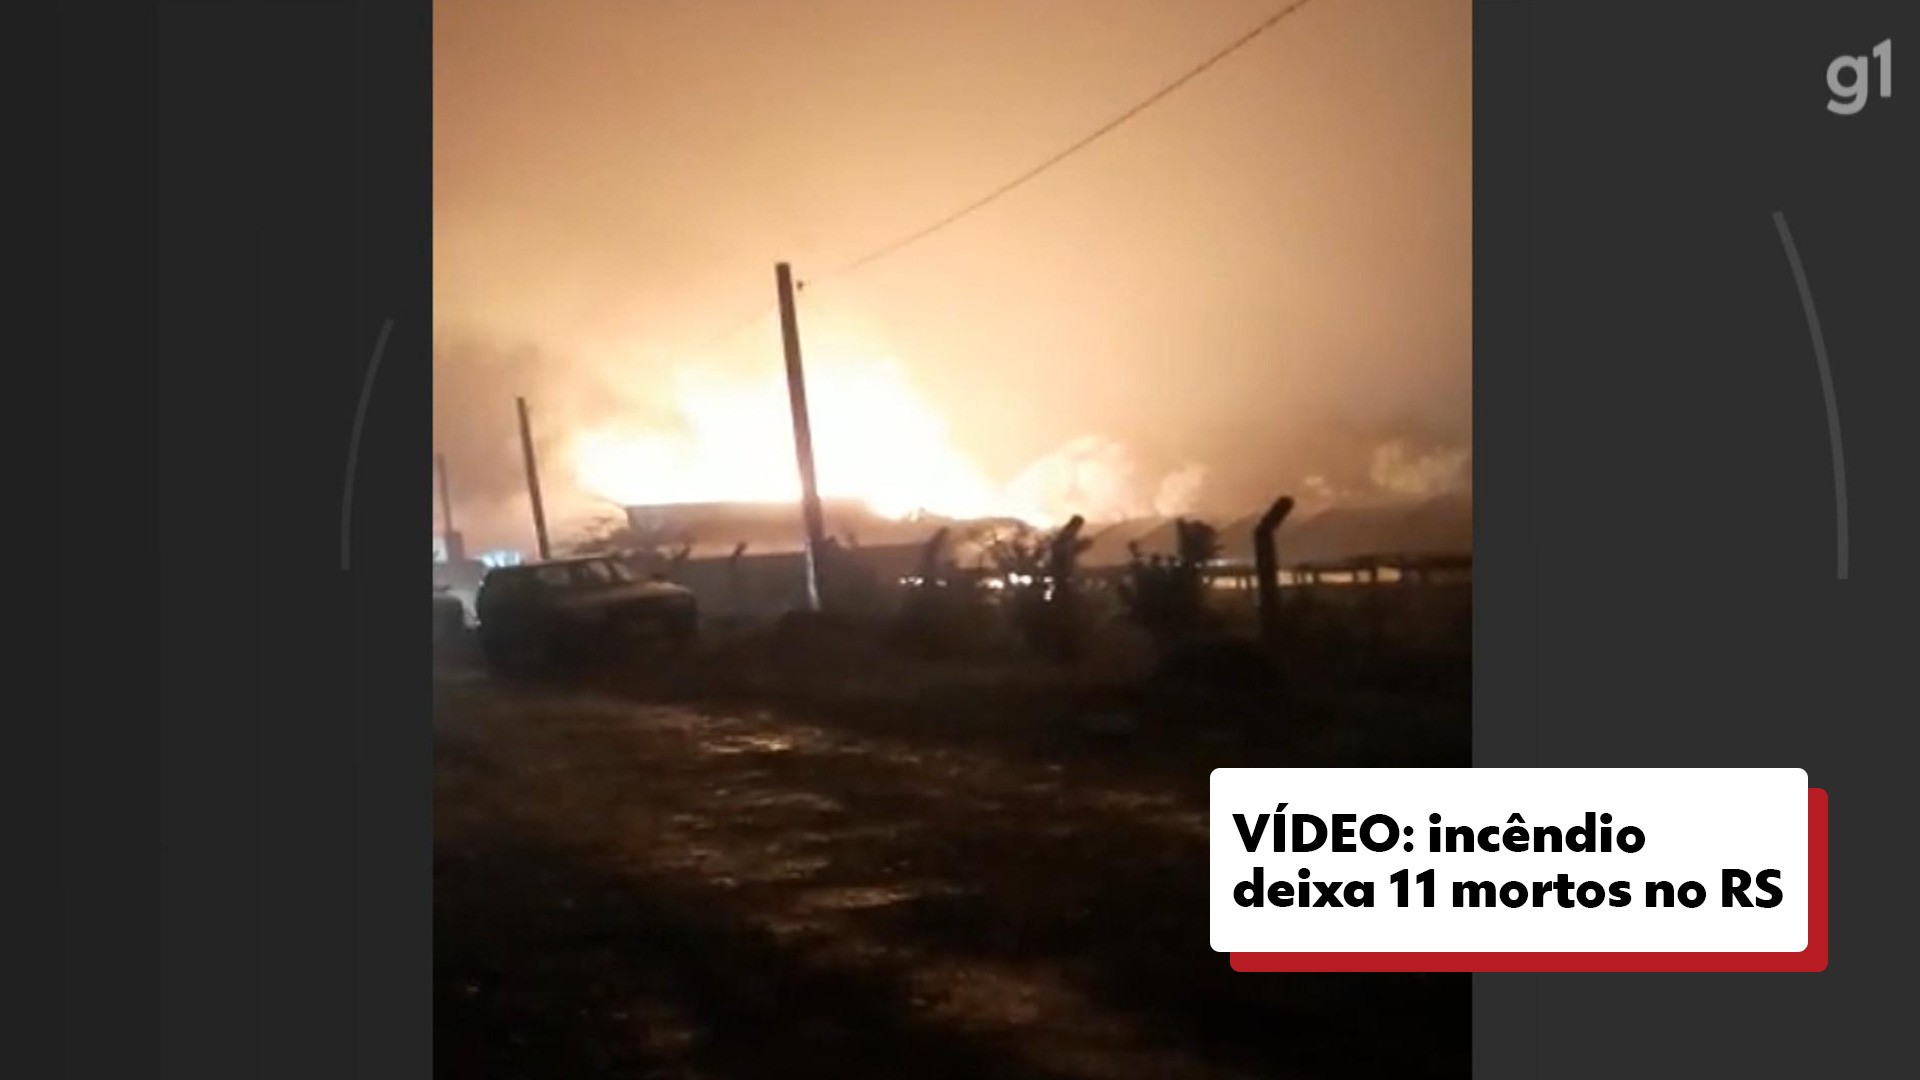 VÍDEOS: tudo sobre incêndio que deixou 11 mortos no RS